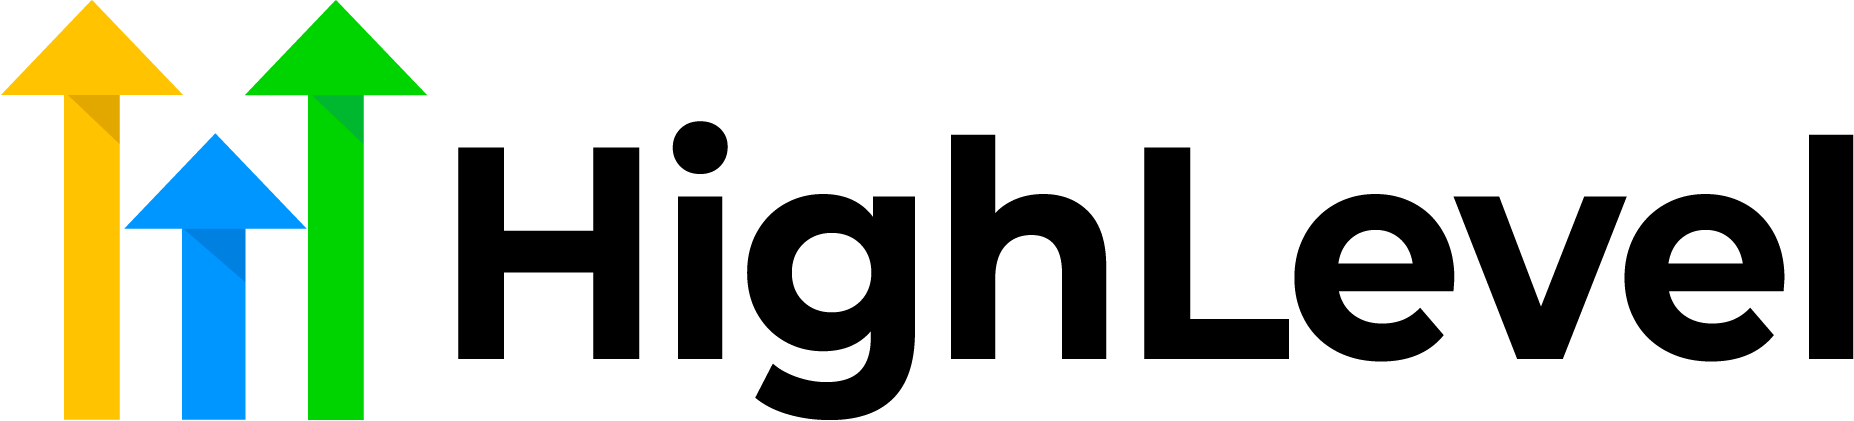 GoHighLevel CRM Logo